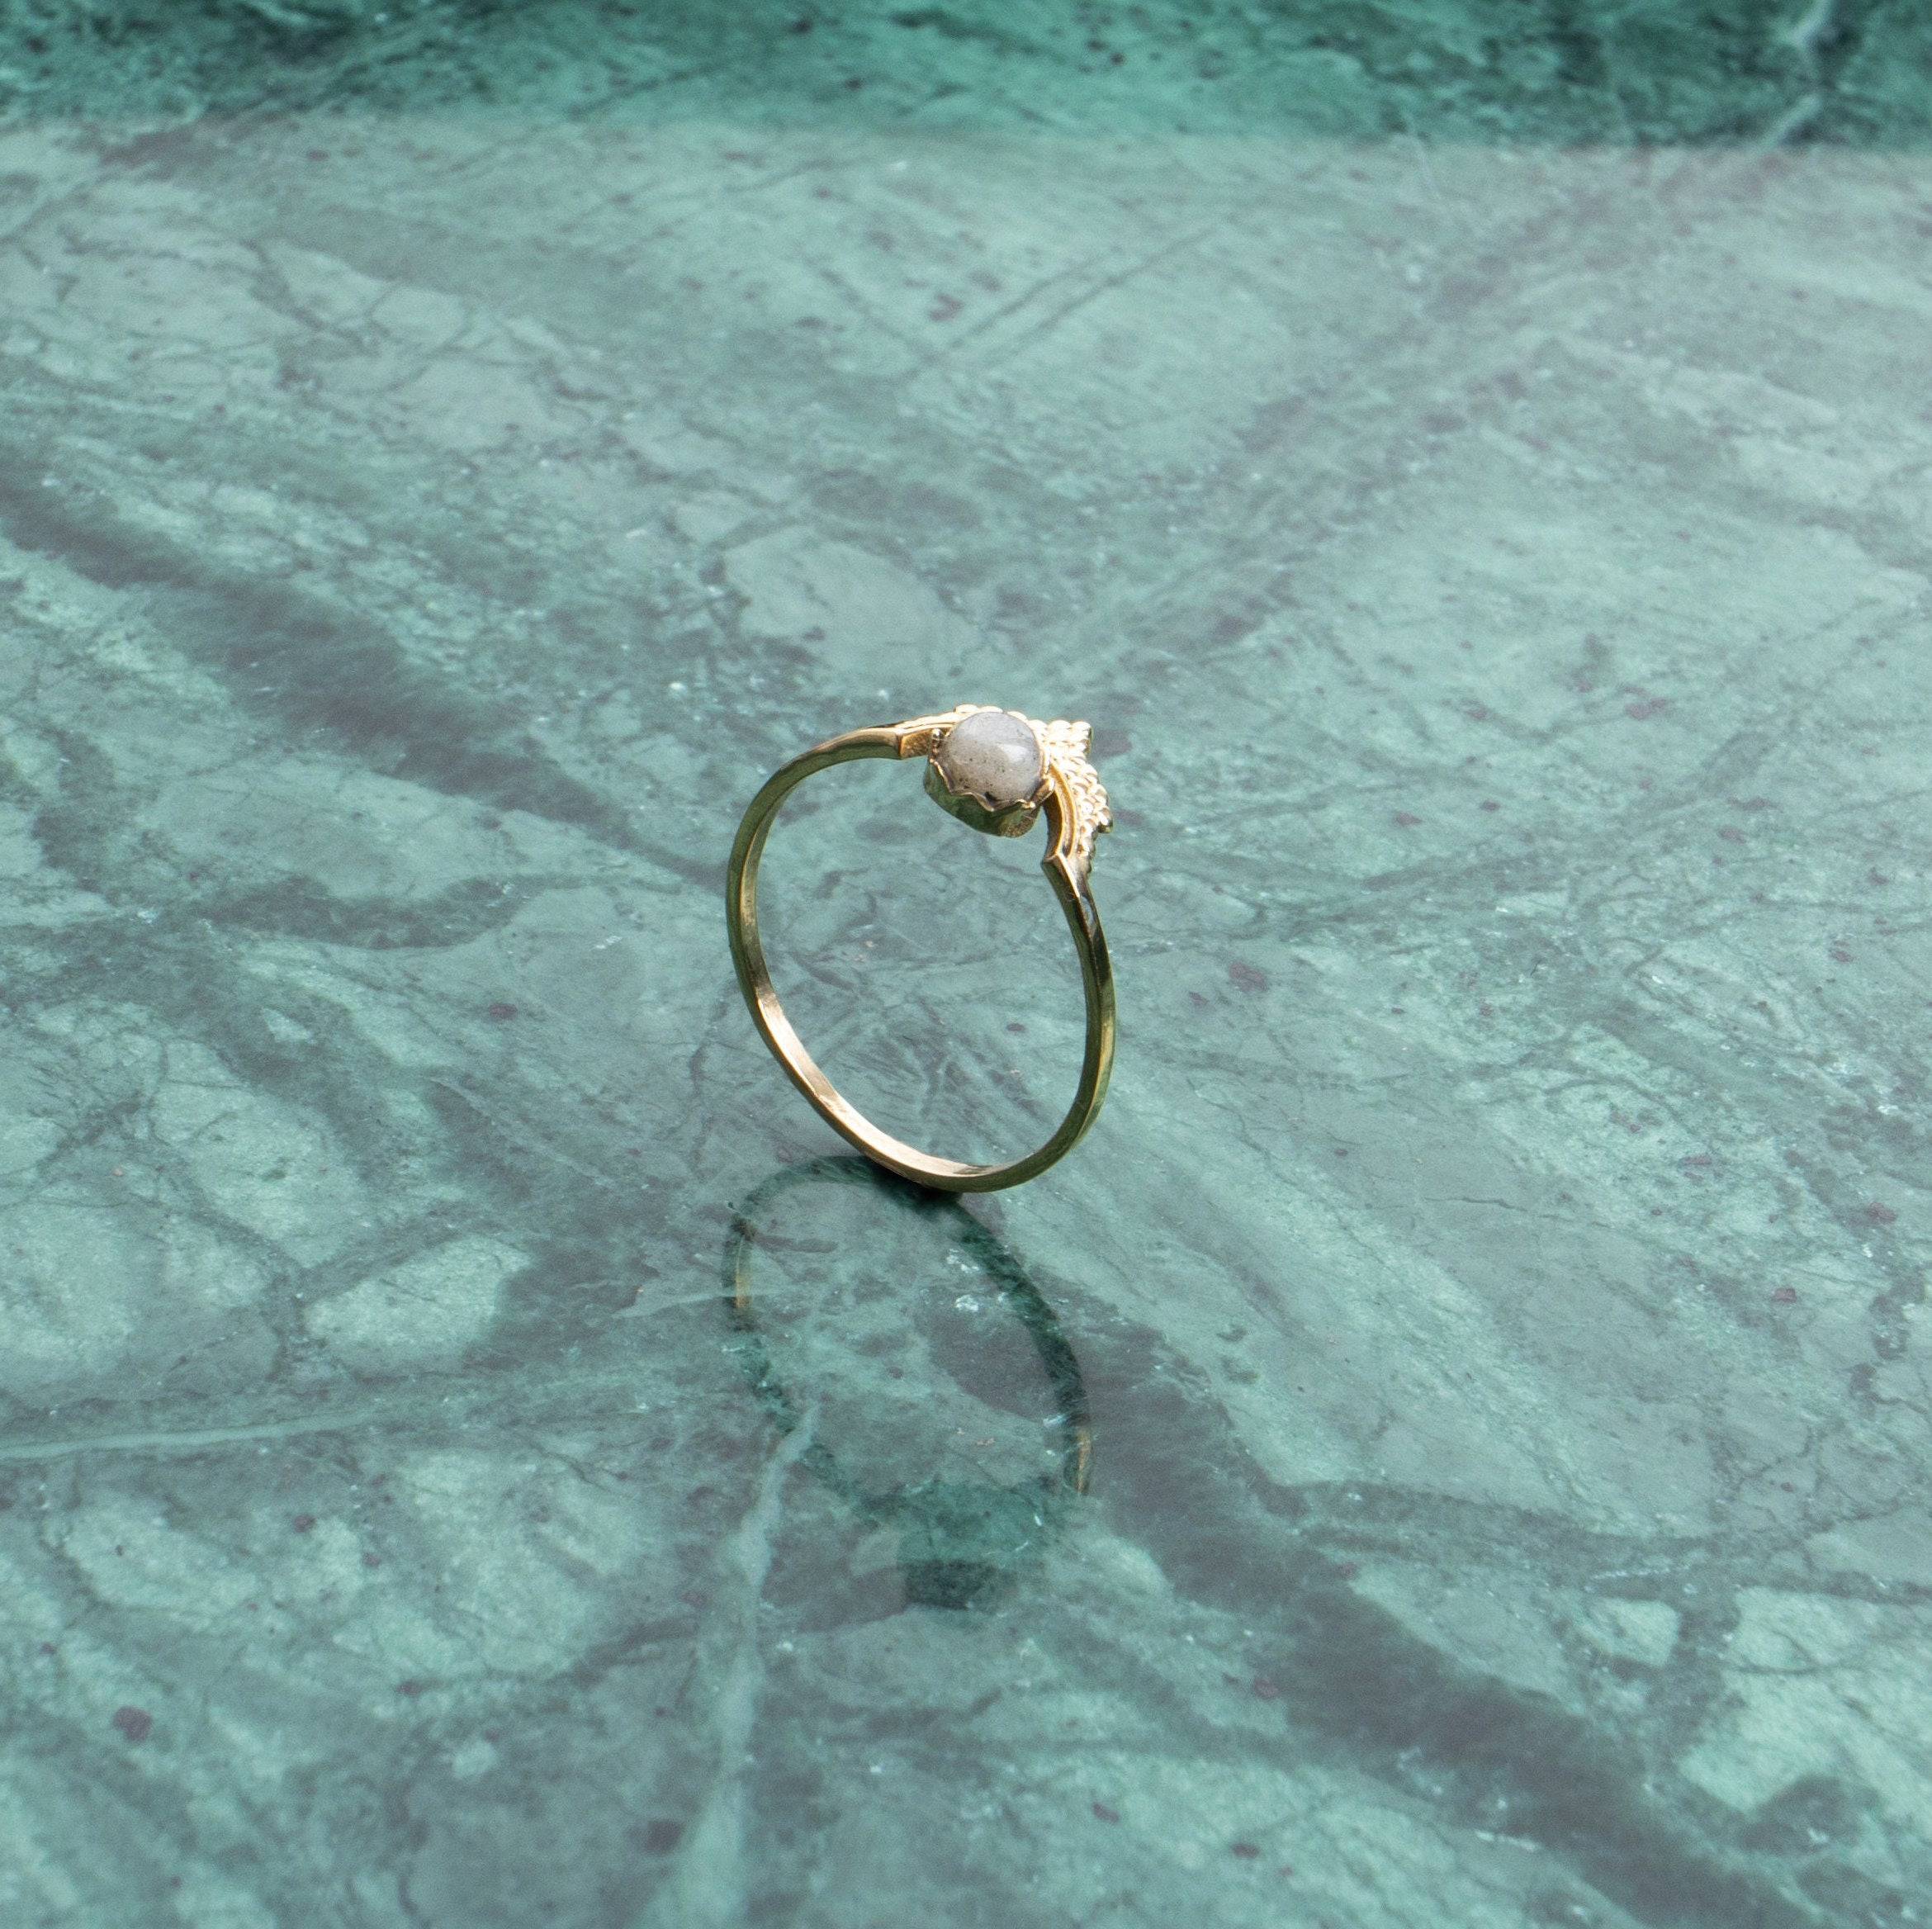 Tiara Kronen Ring mit Mondstein handgemacht - NooeBerlin